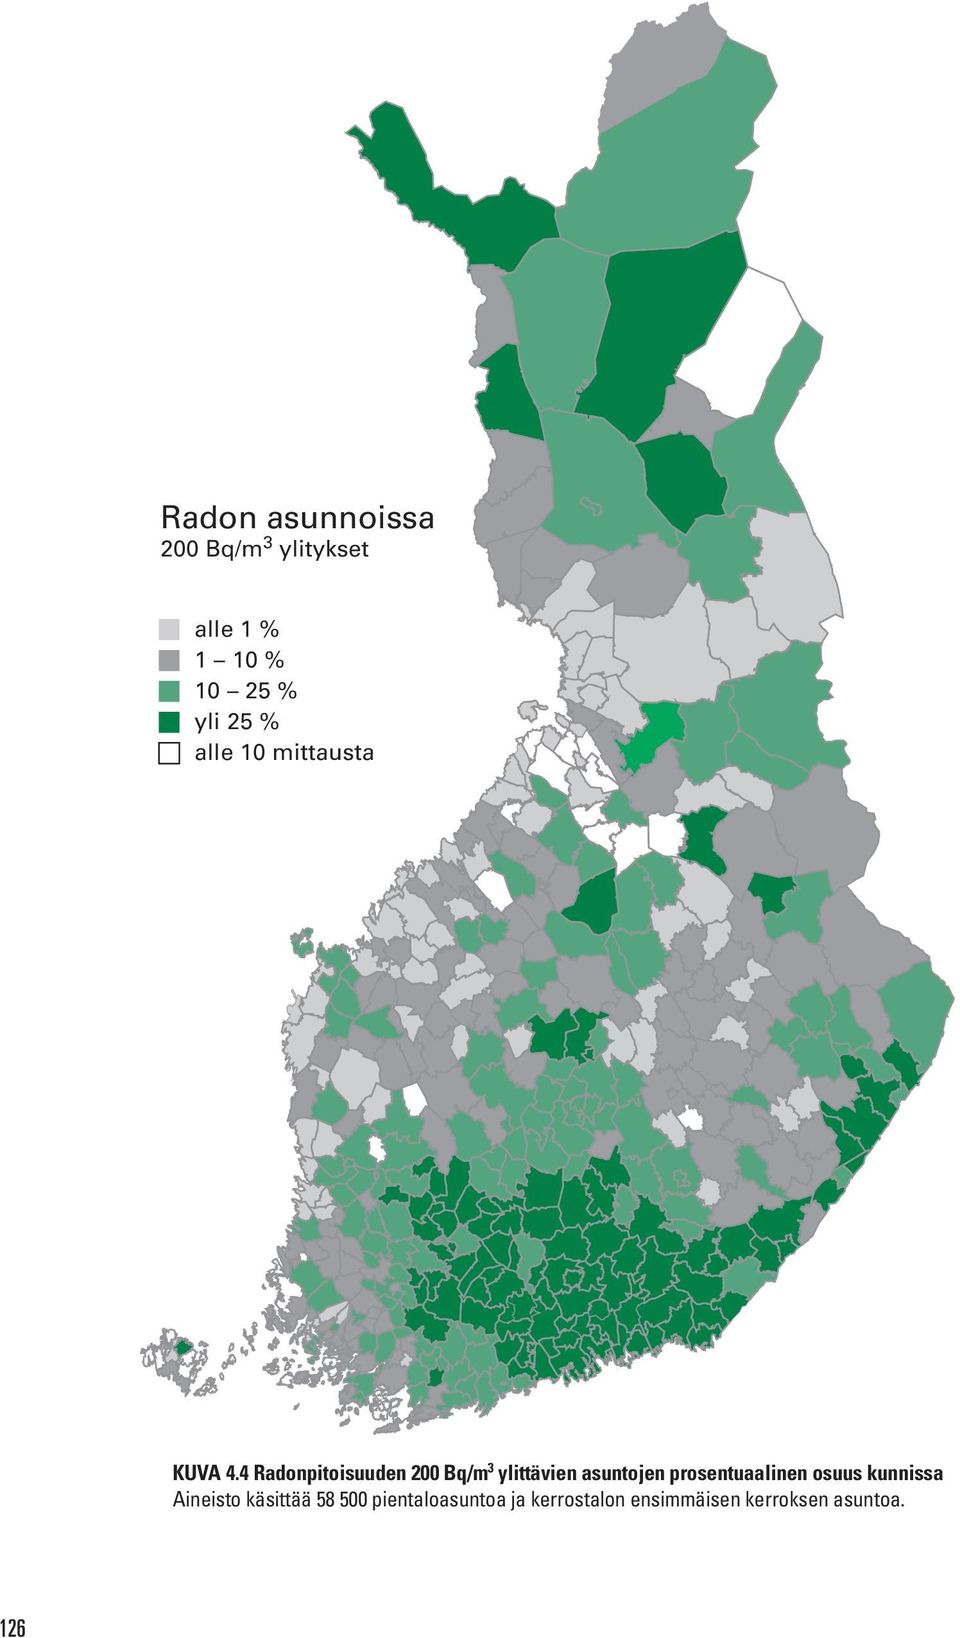 4 Radonpitoisuuden 200 Bq/m 3 ylittävien asuntojen prosentuaalinen